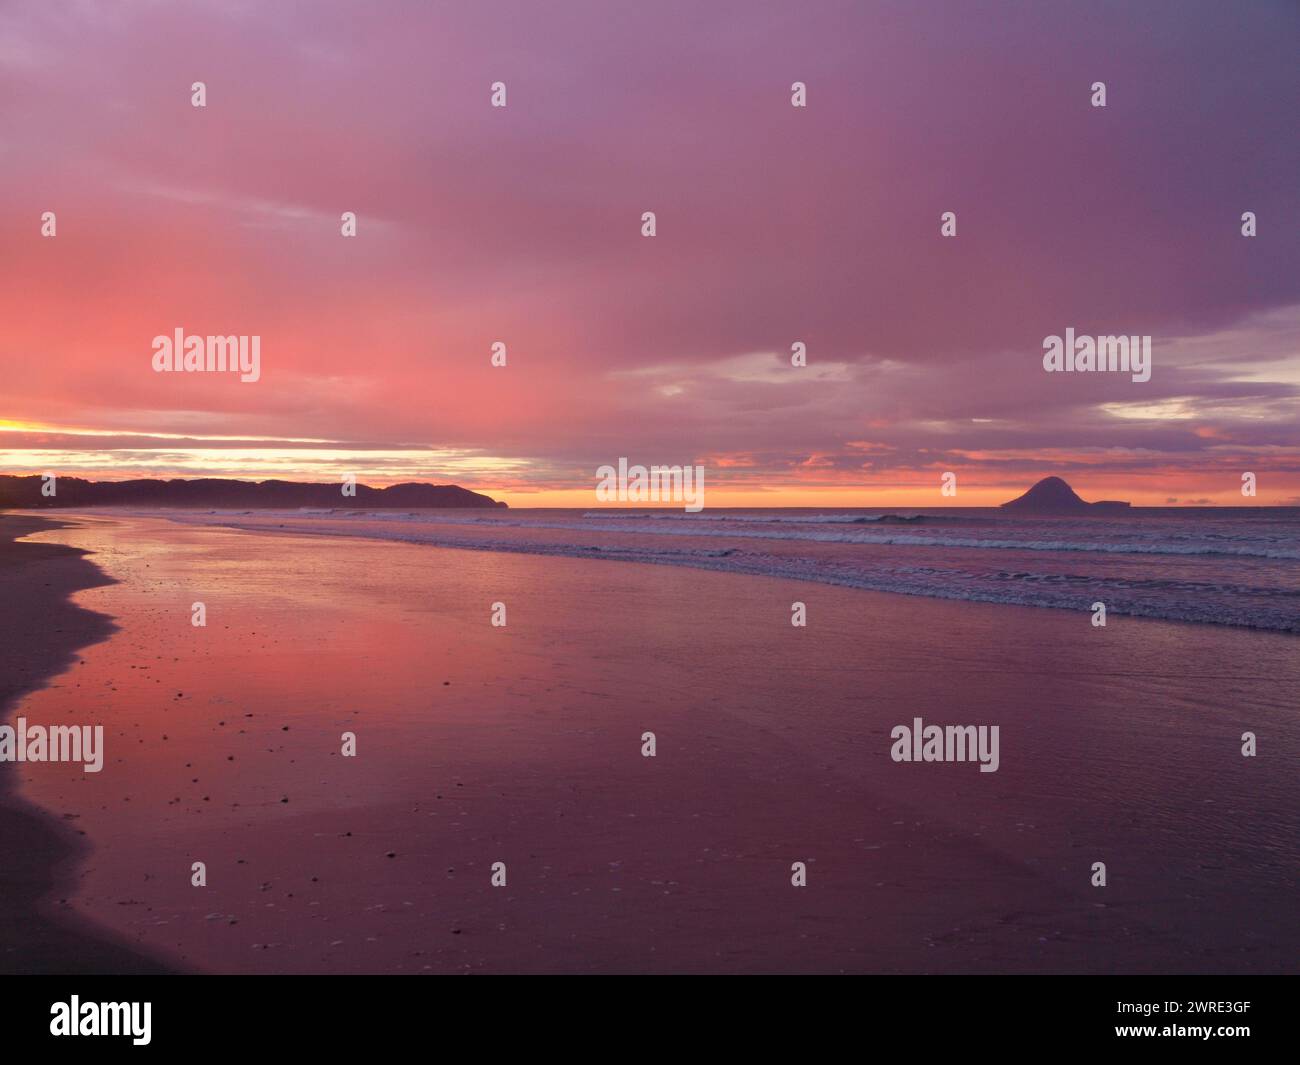 Coucher de soleil sur une plage néo-zélandaise. Whakatane - Nouvelle-Zélande. Banque D'Images